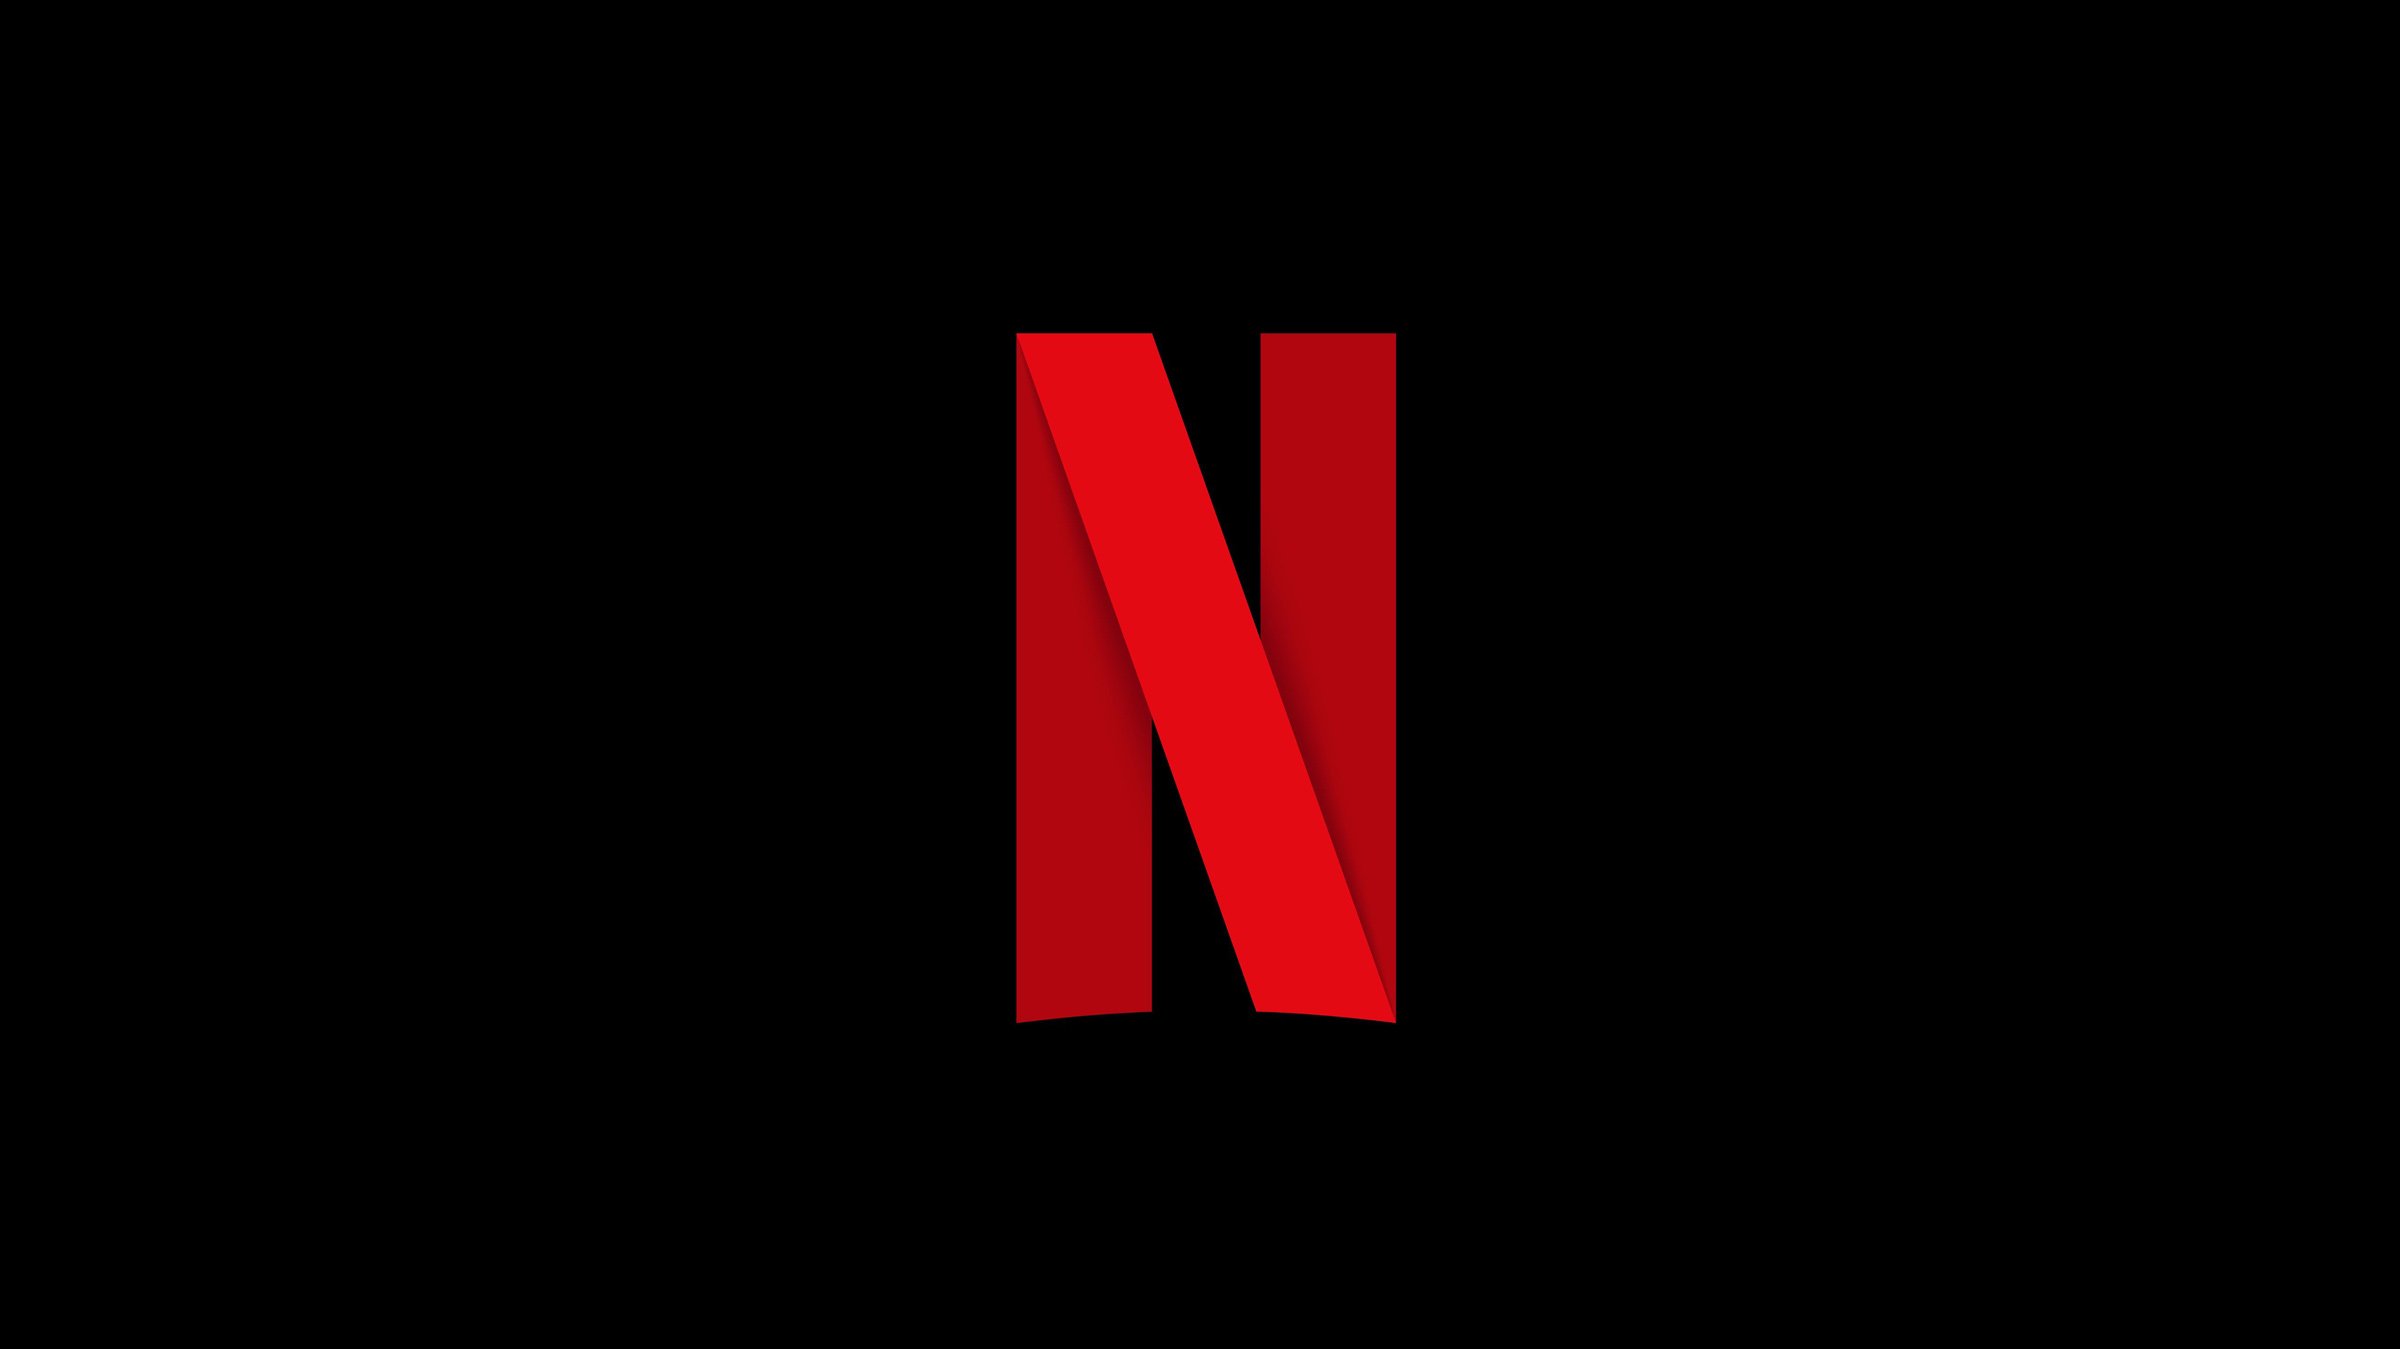 Justiceiro chega à Netflix em novembro, diz diretora - Canaltech